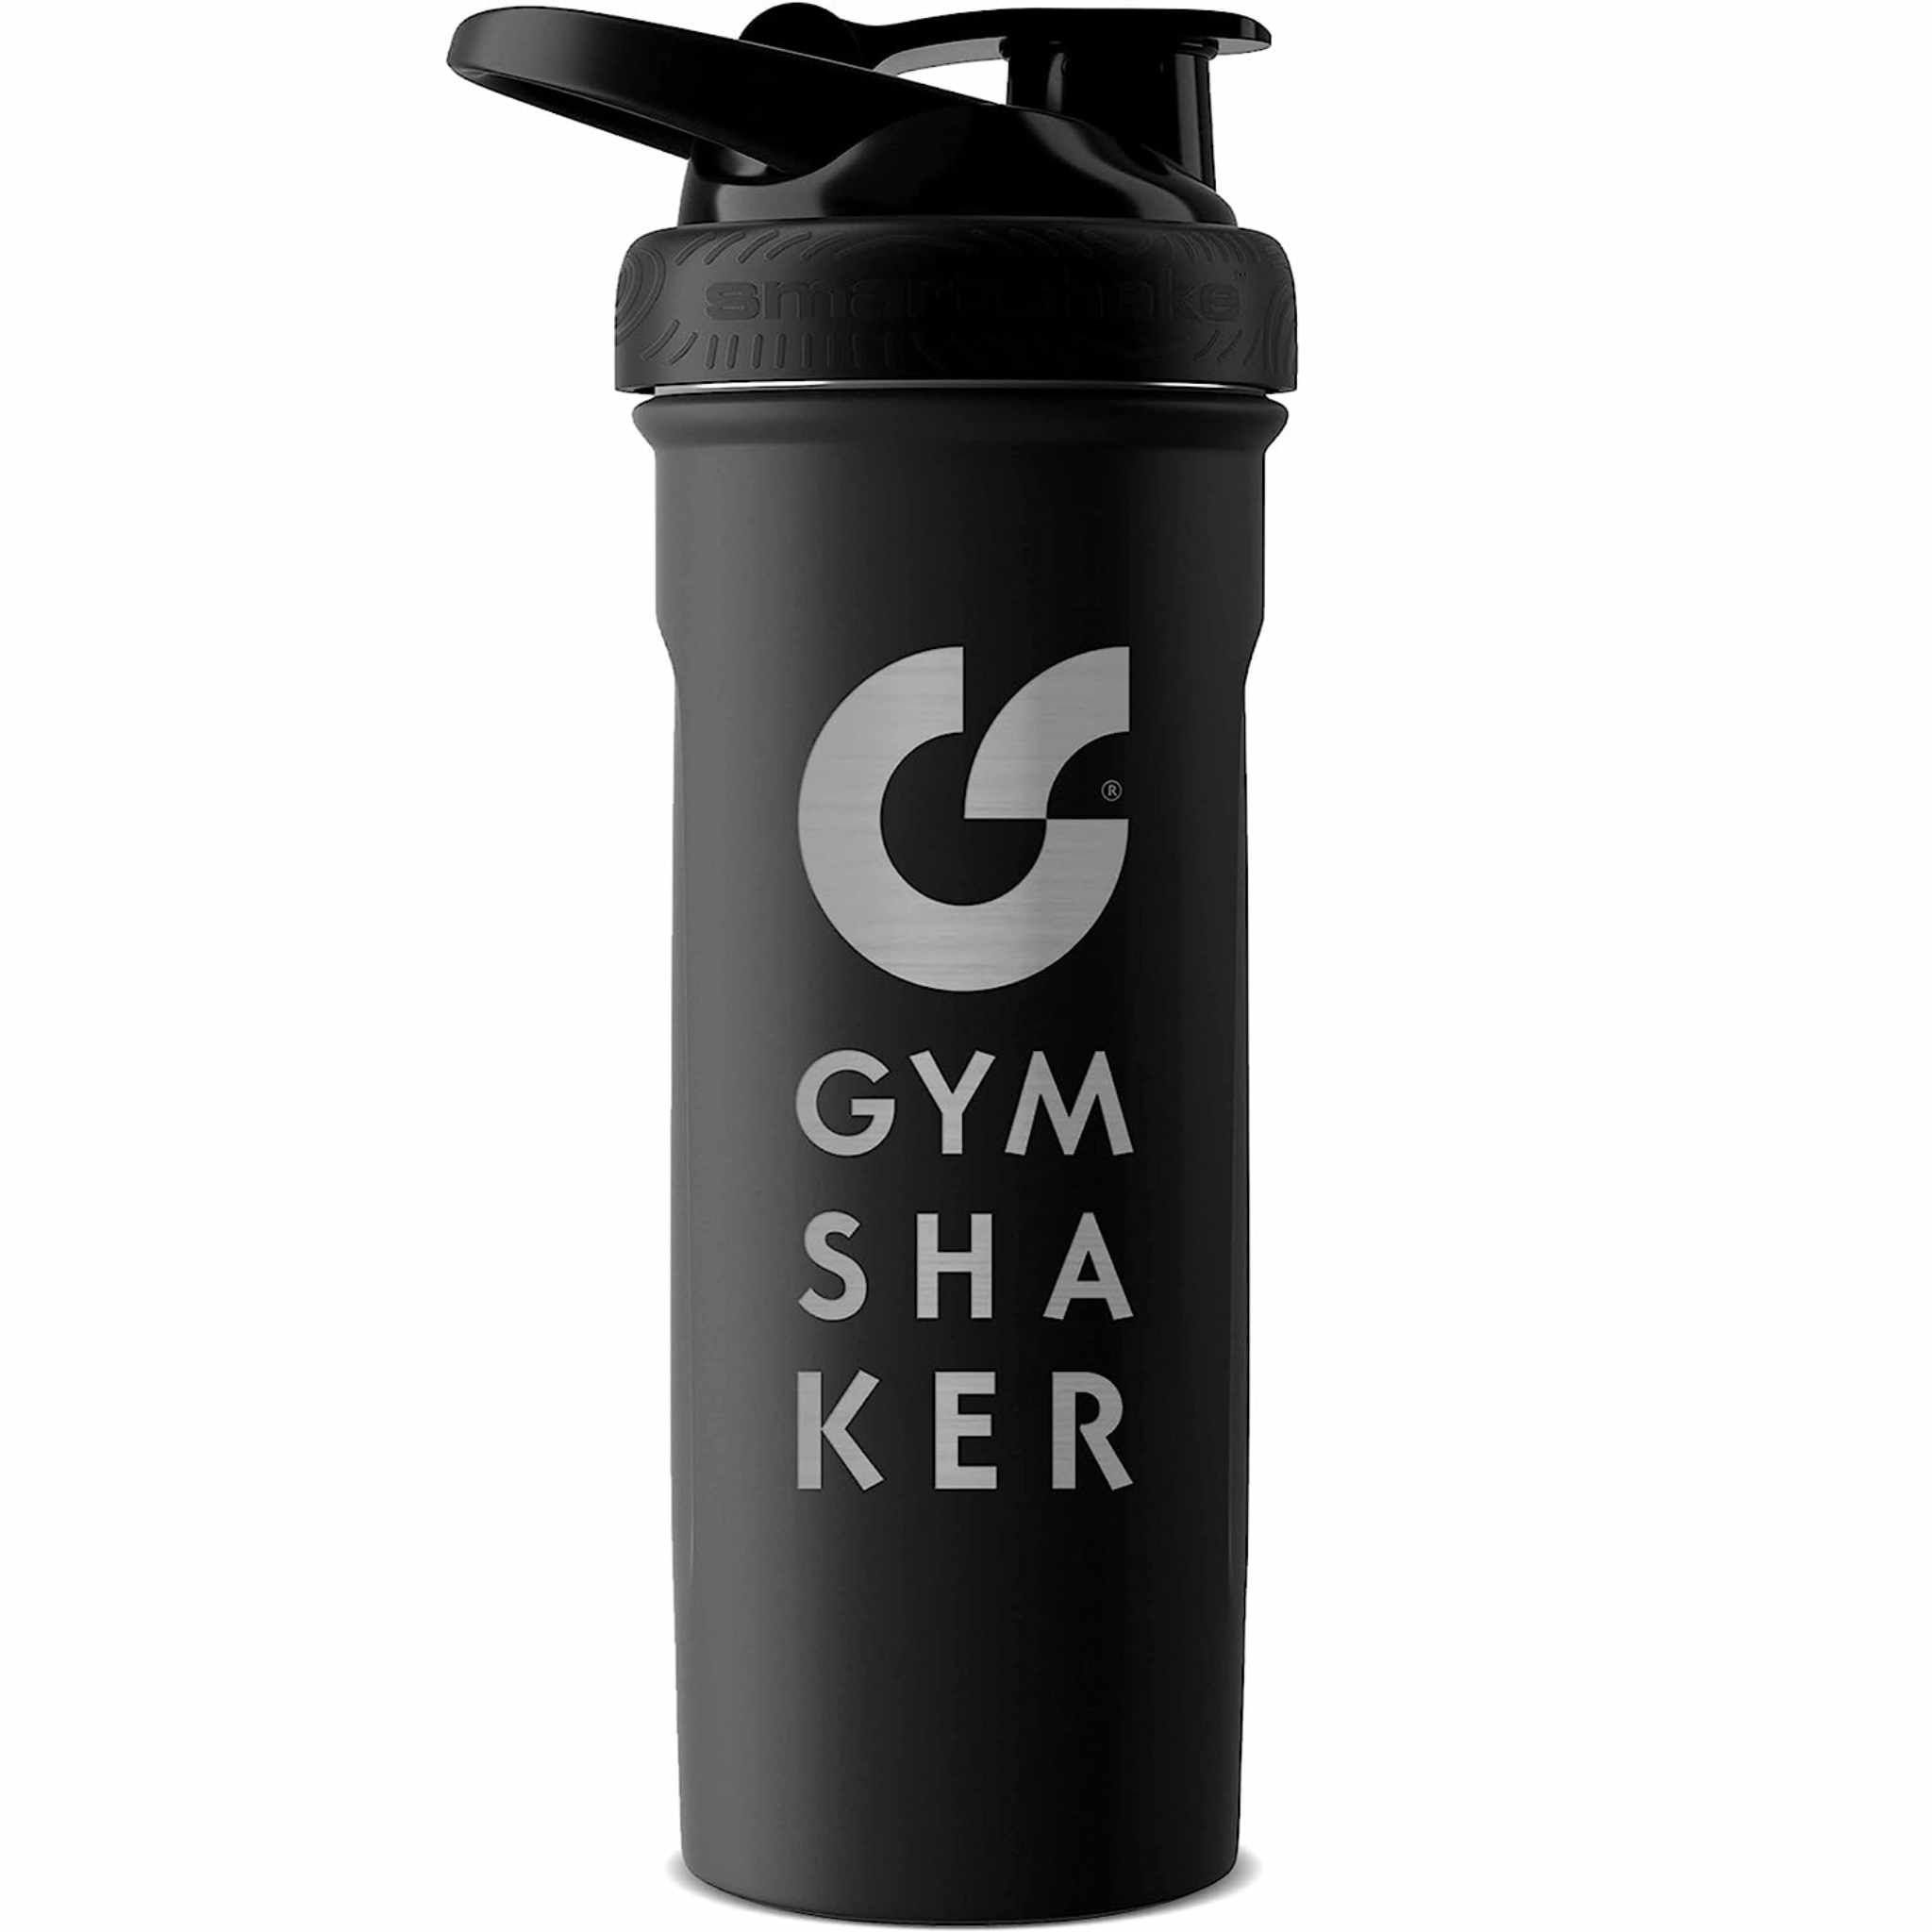 GYMSHAKER Protein Shaker Edelstahl Insulated